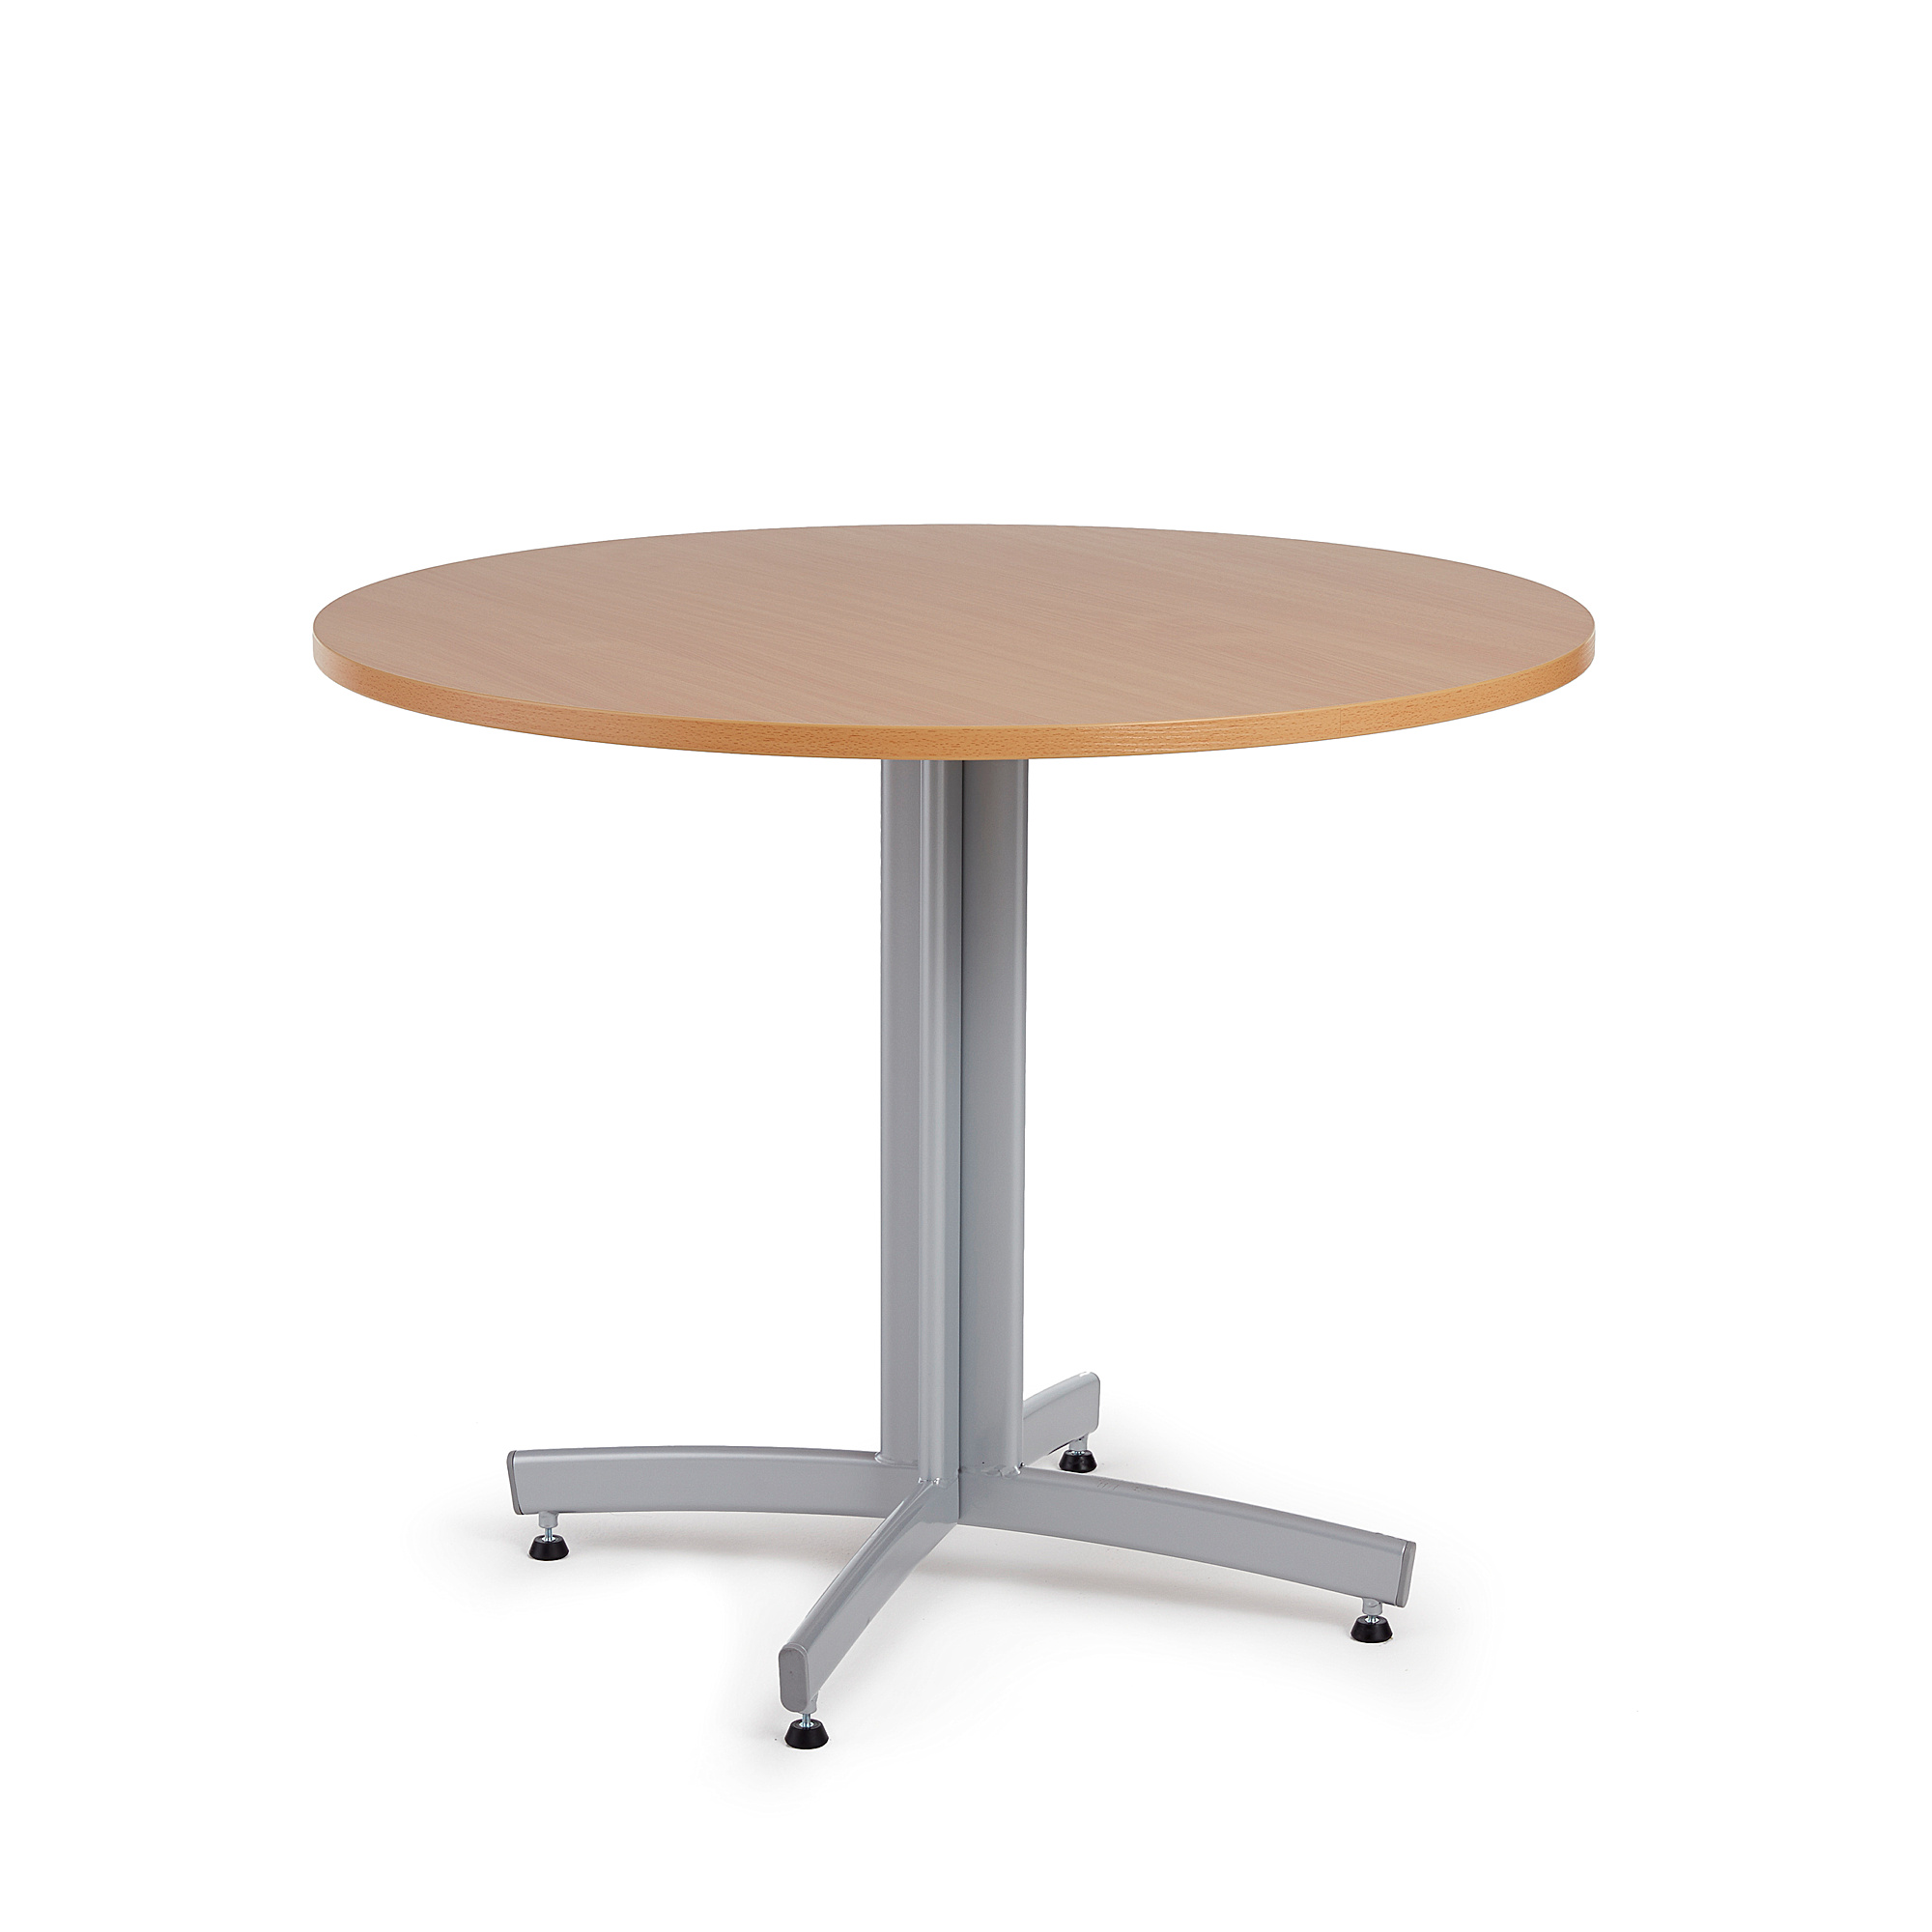 Jedálenský stôl SANNA, okrúhly Ø 900 x V 720 mm, buk / šedá